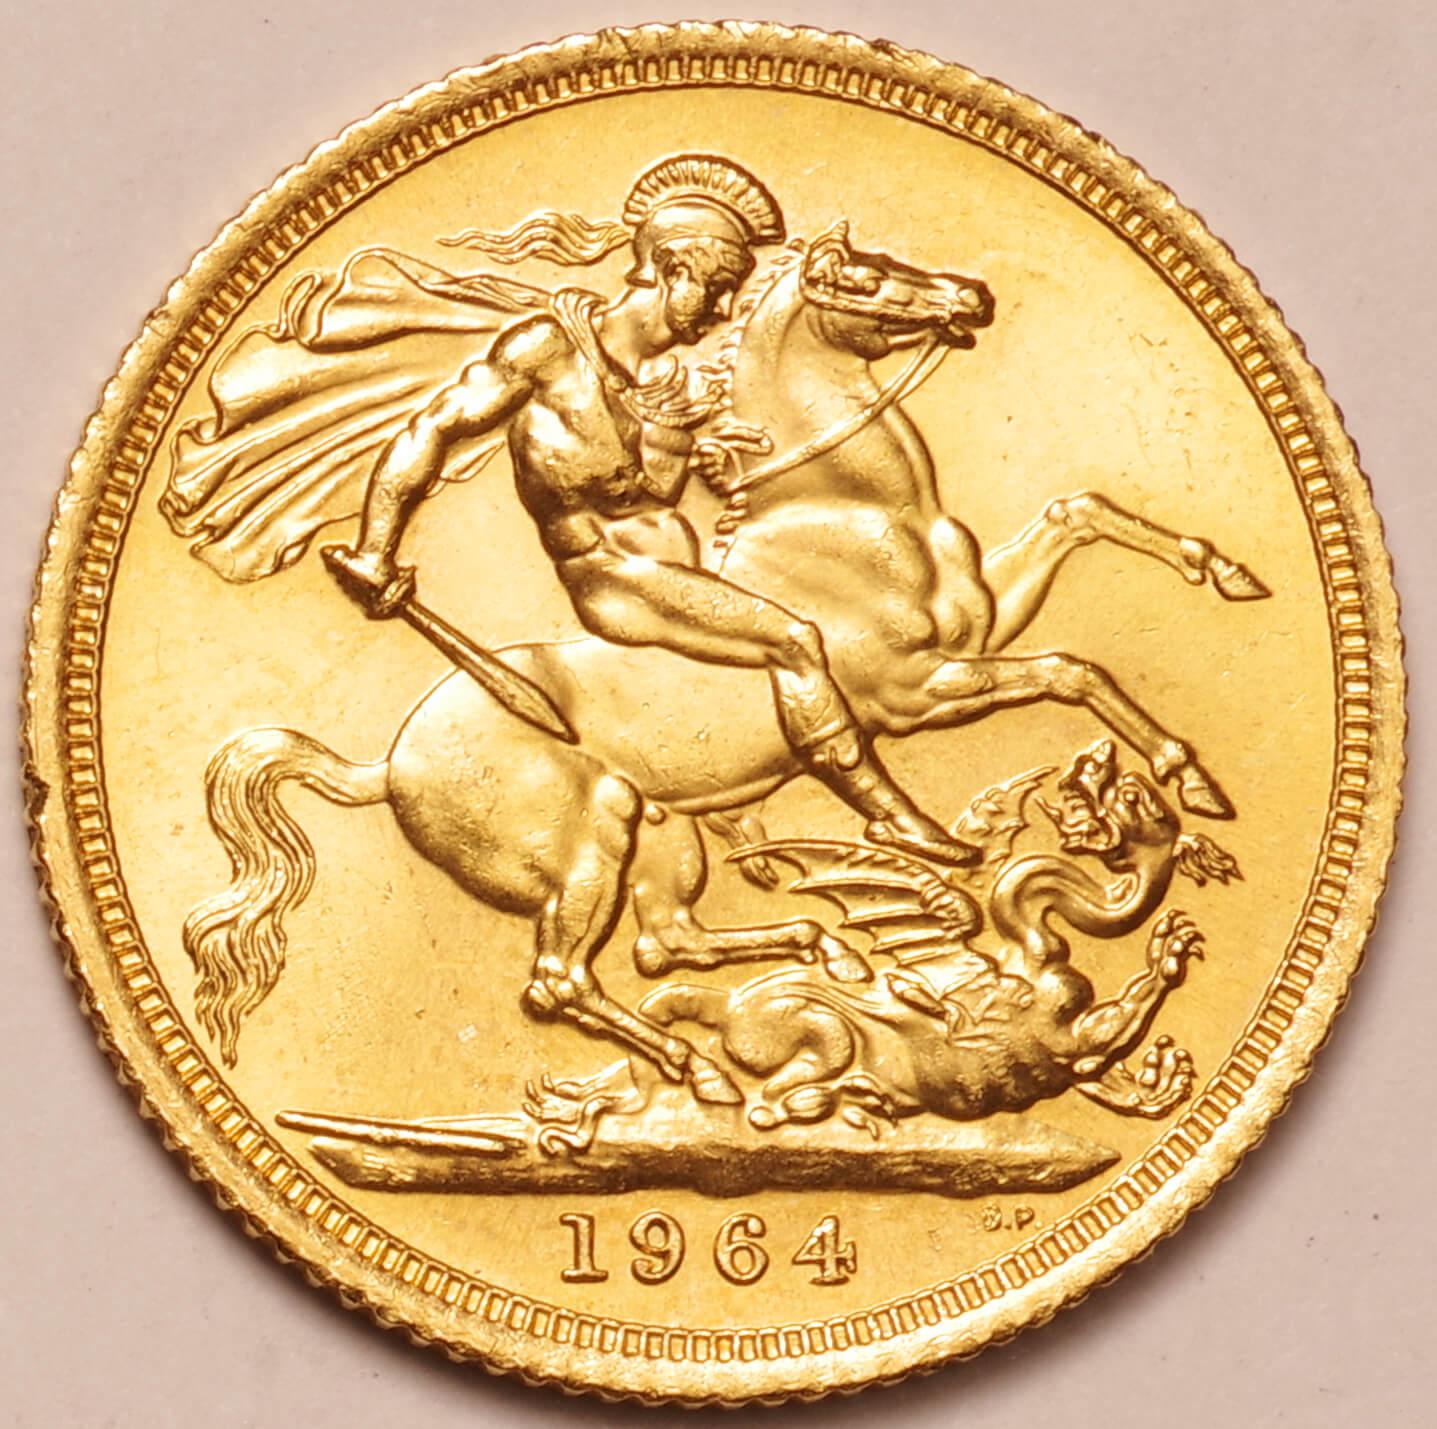 1964年 イギリス エリザベスⅡ ソブリン金貨-